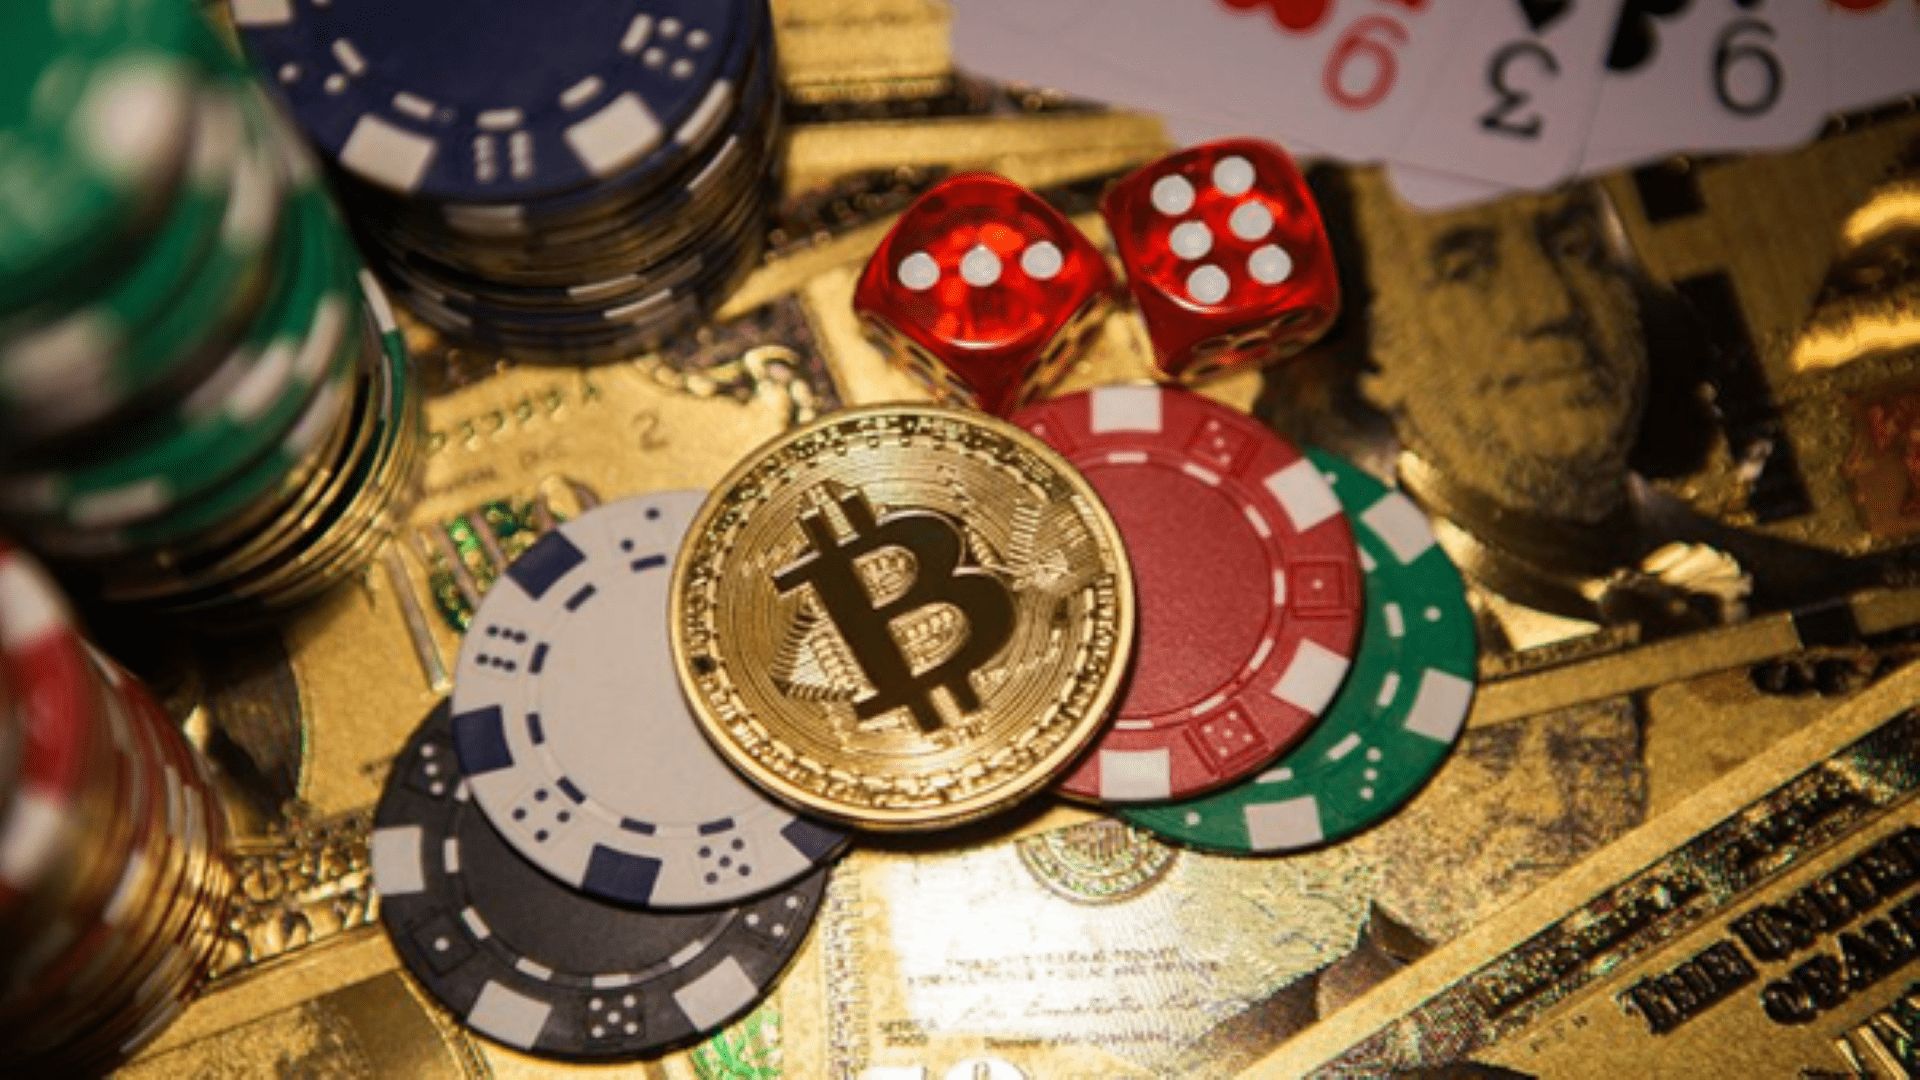 Advantages and Disadvantages of Gambling Using Bitcoin